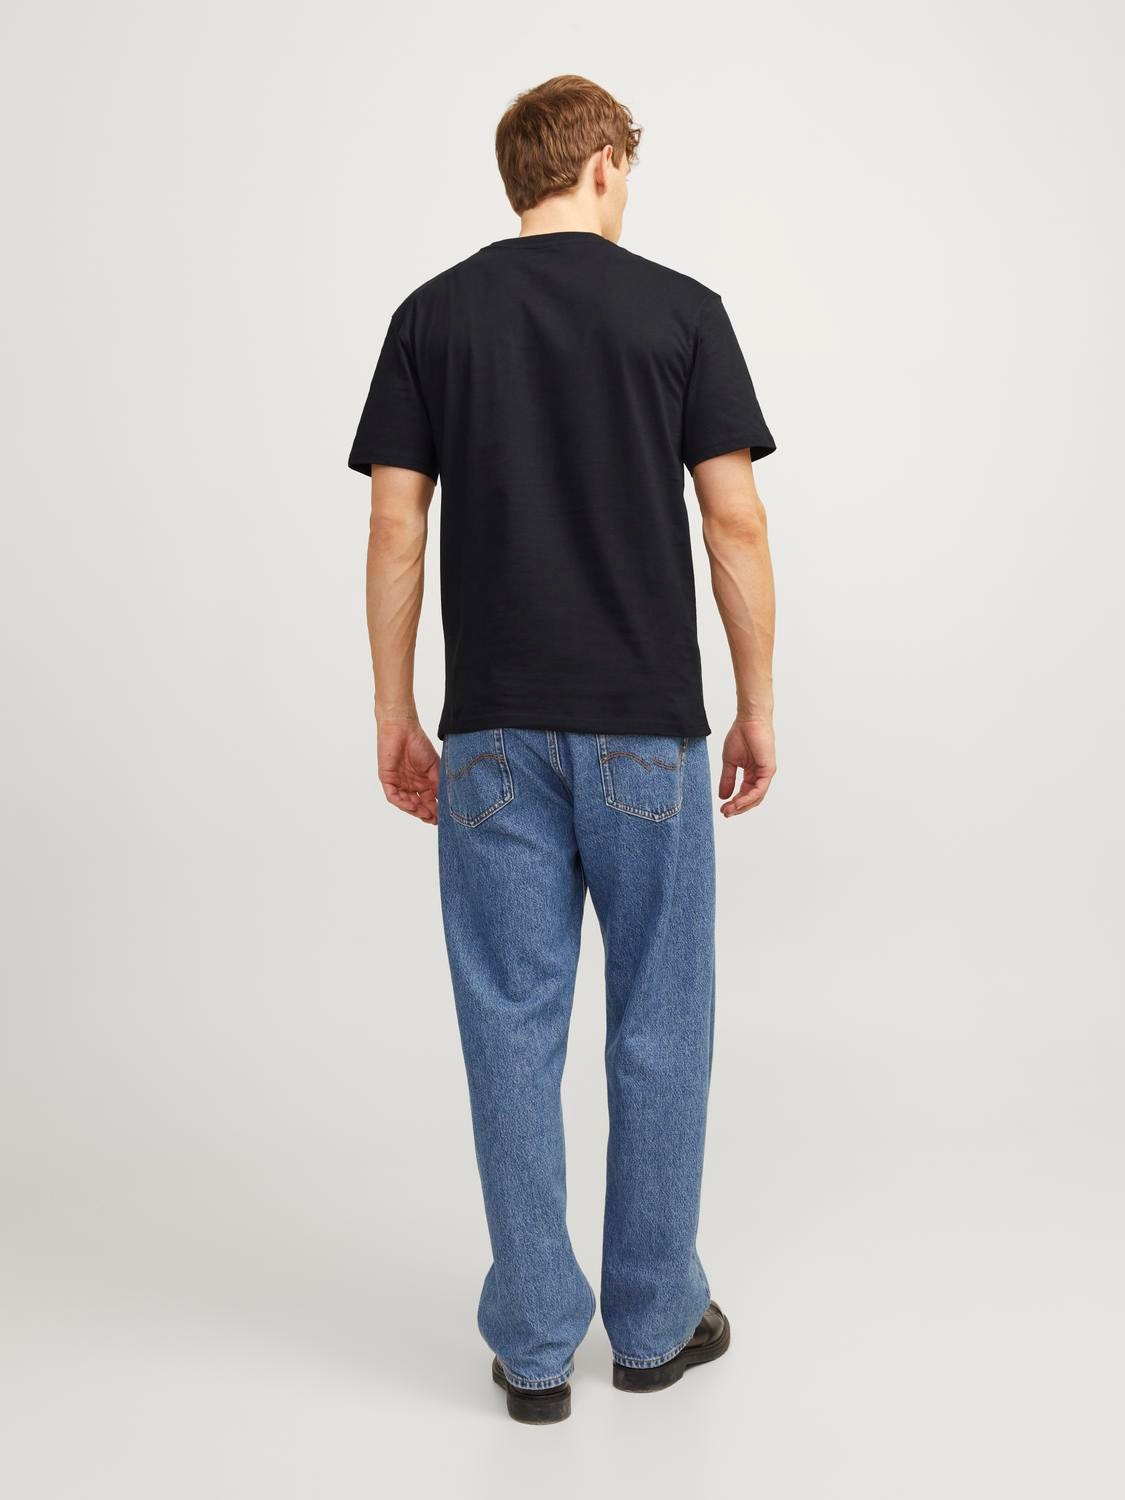 Jack & Jones Enfärgat Rundringning T-shirt -Black - 12190467